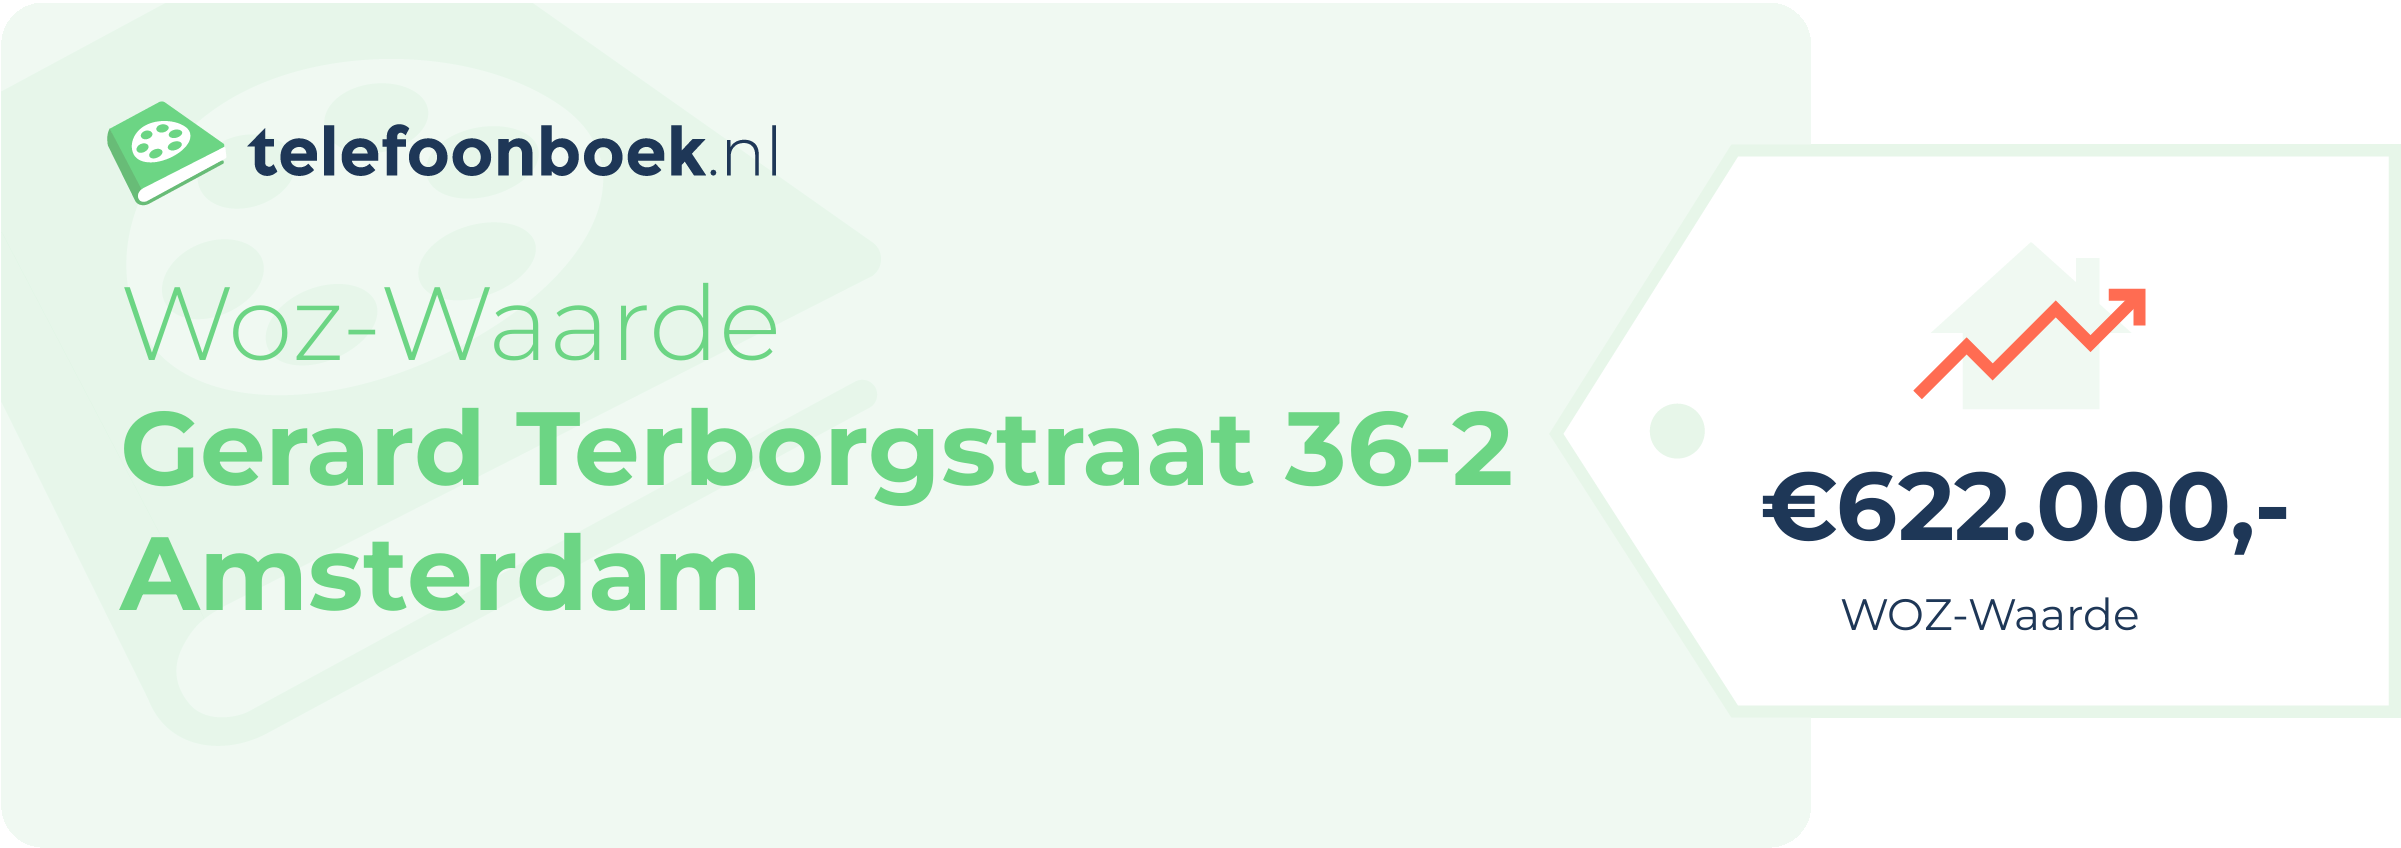 WOZ-waarde Gerard Terborgstraat 36-2 Amsterdam